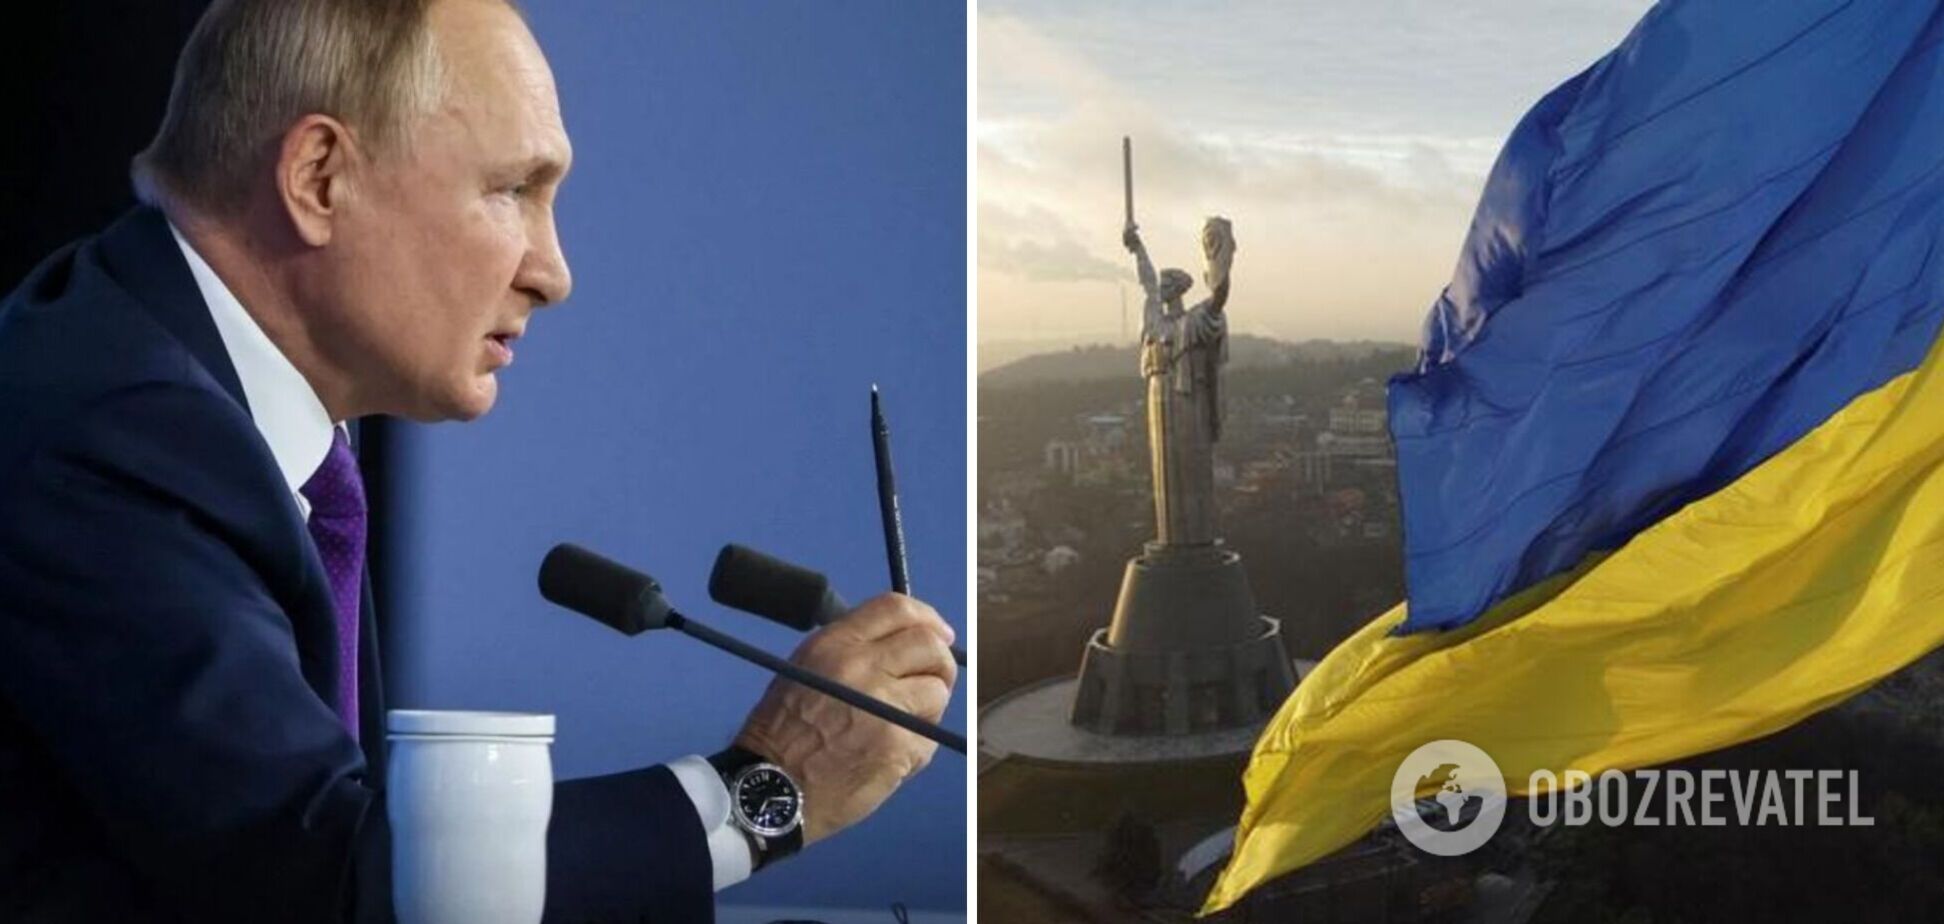 Путін окреслив свої територіальні претензії: Україна прийшла із трьома областями, решту додав Ленін